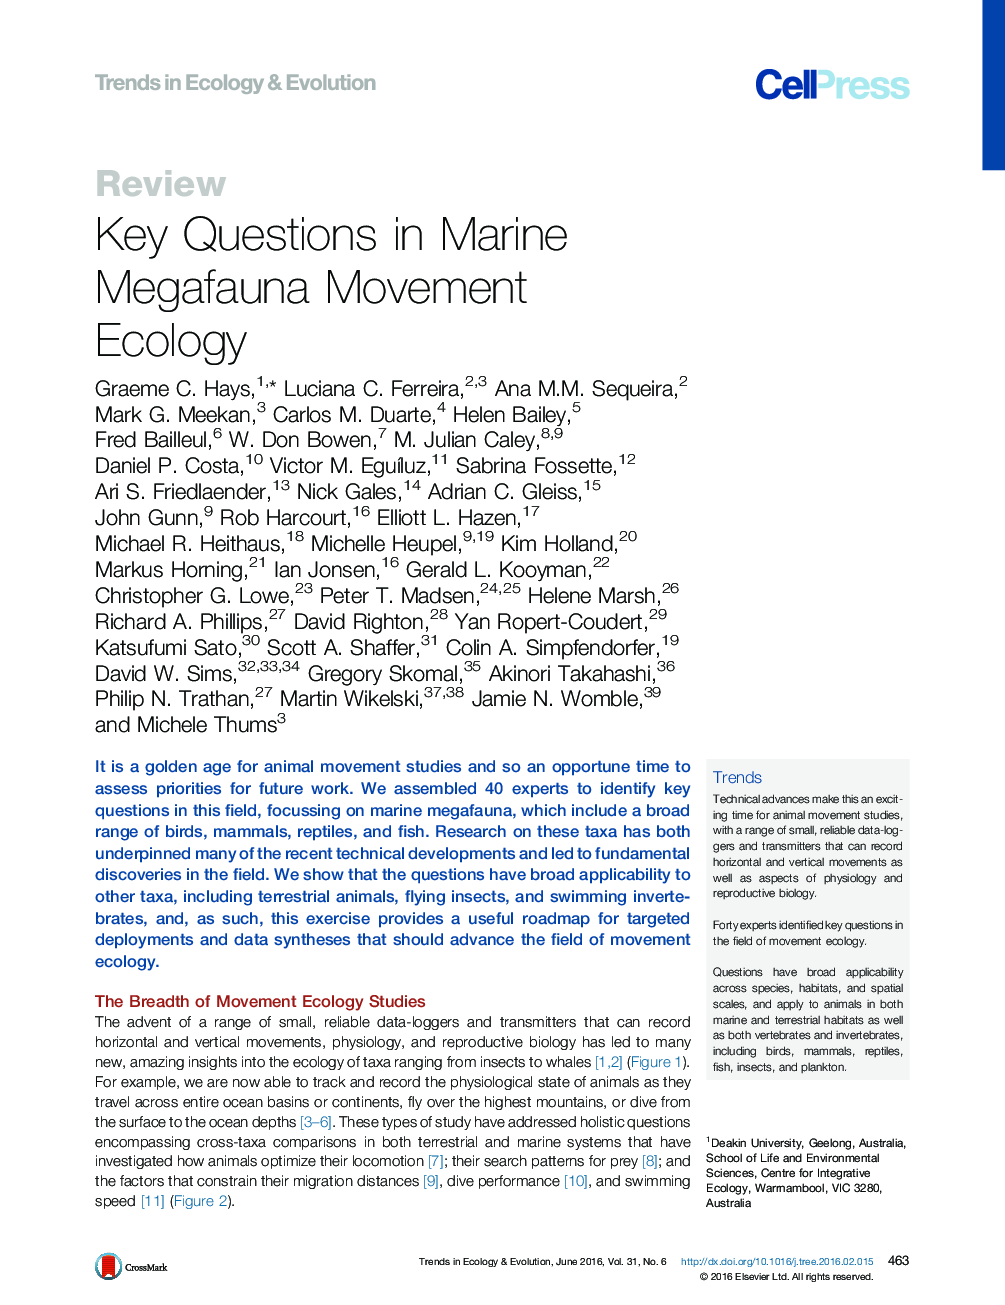 سوالات کلیدی در زمینه اکولوژی جنبش مگاجانداران دریایی